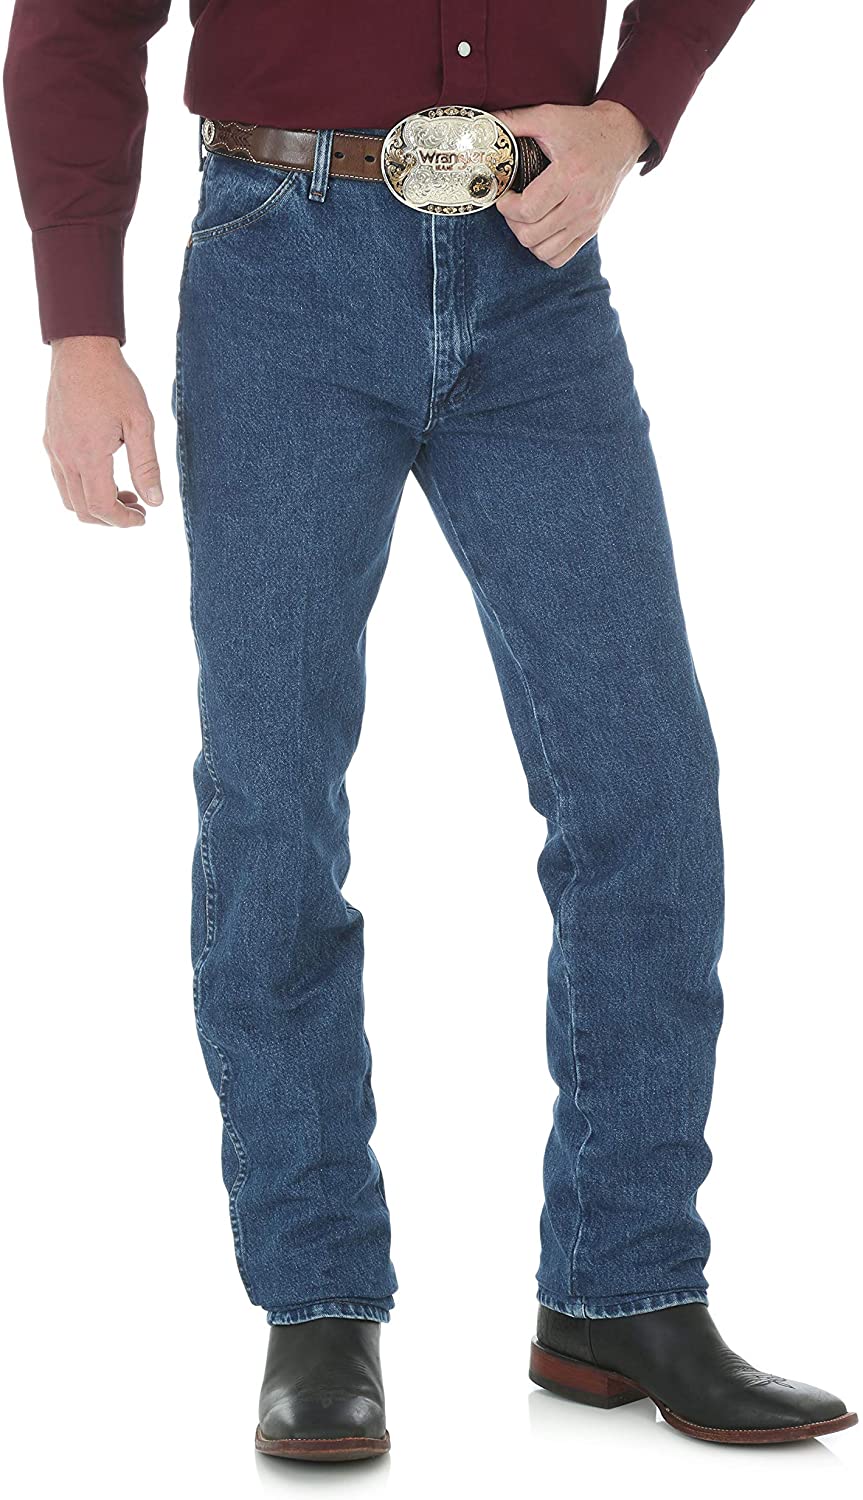 Wrangler Cowboy Cut Slim Fit Jeans 0936 Men's